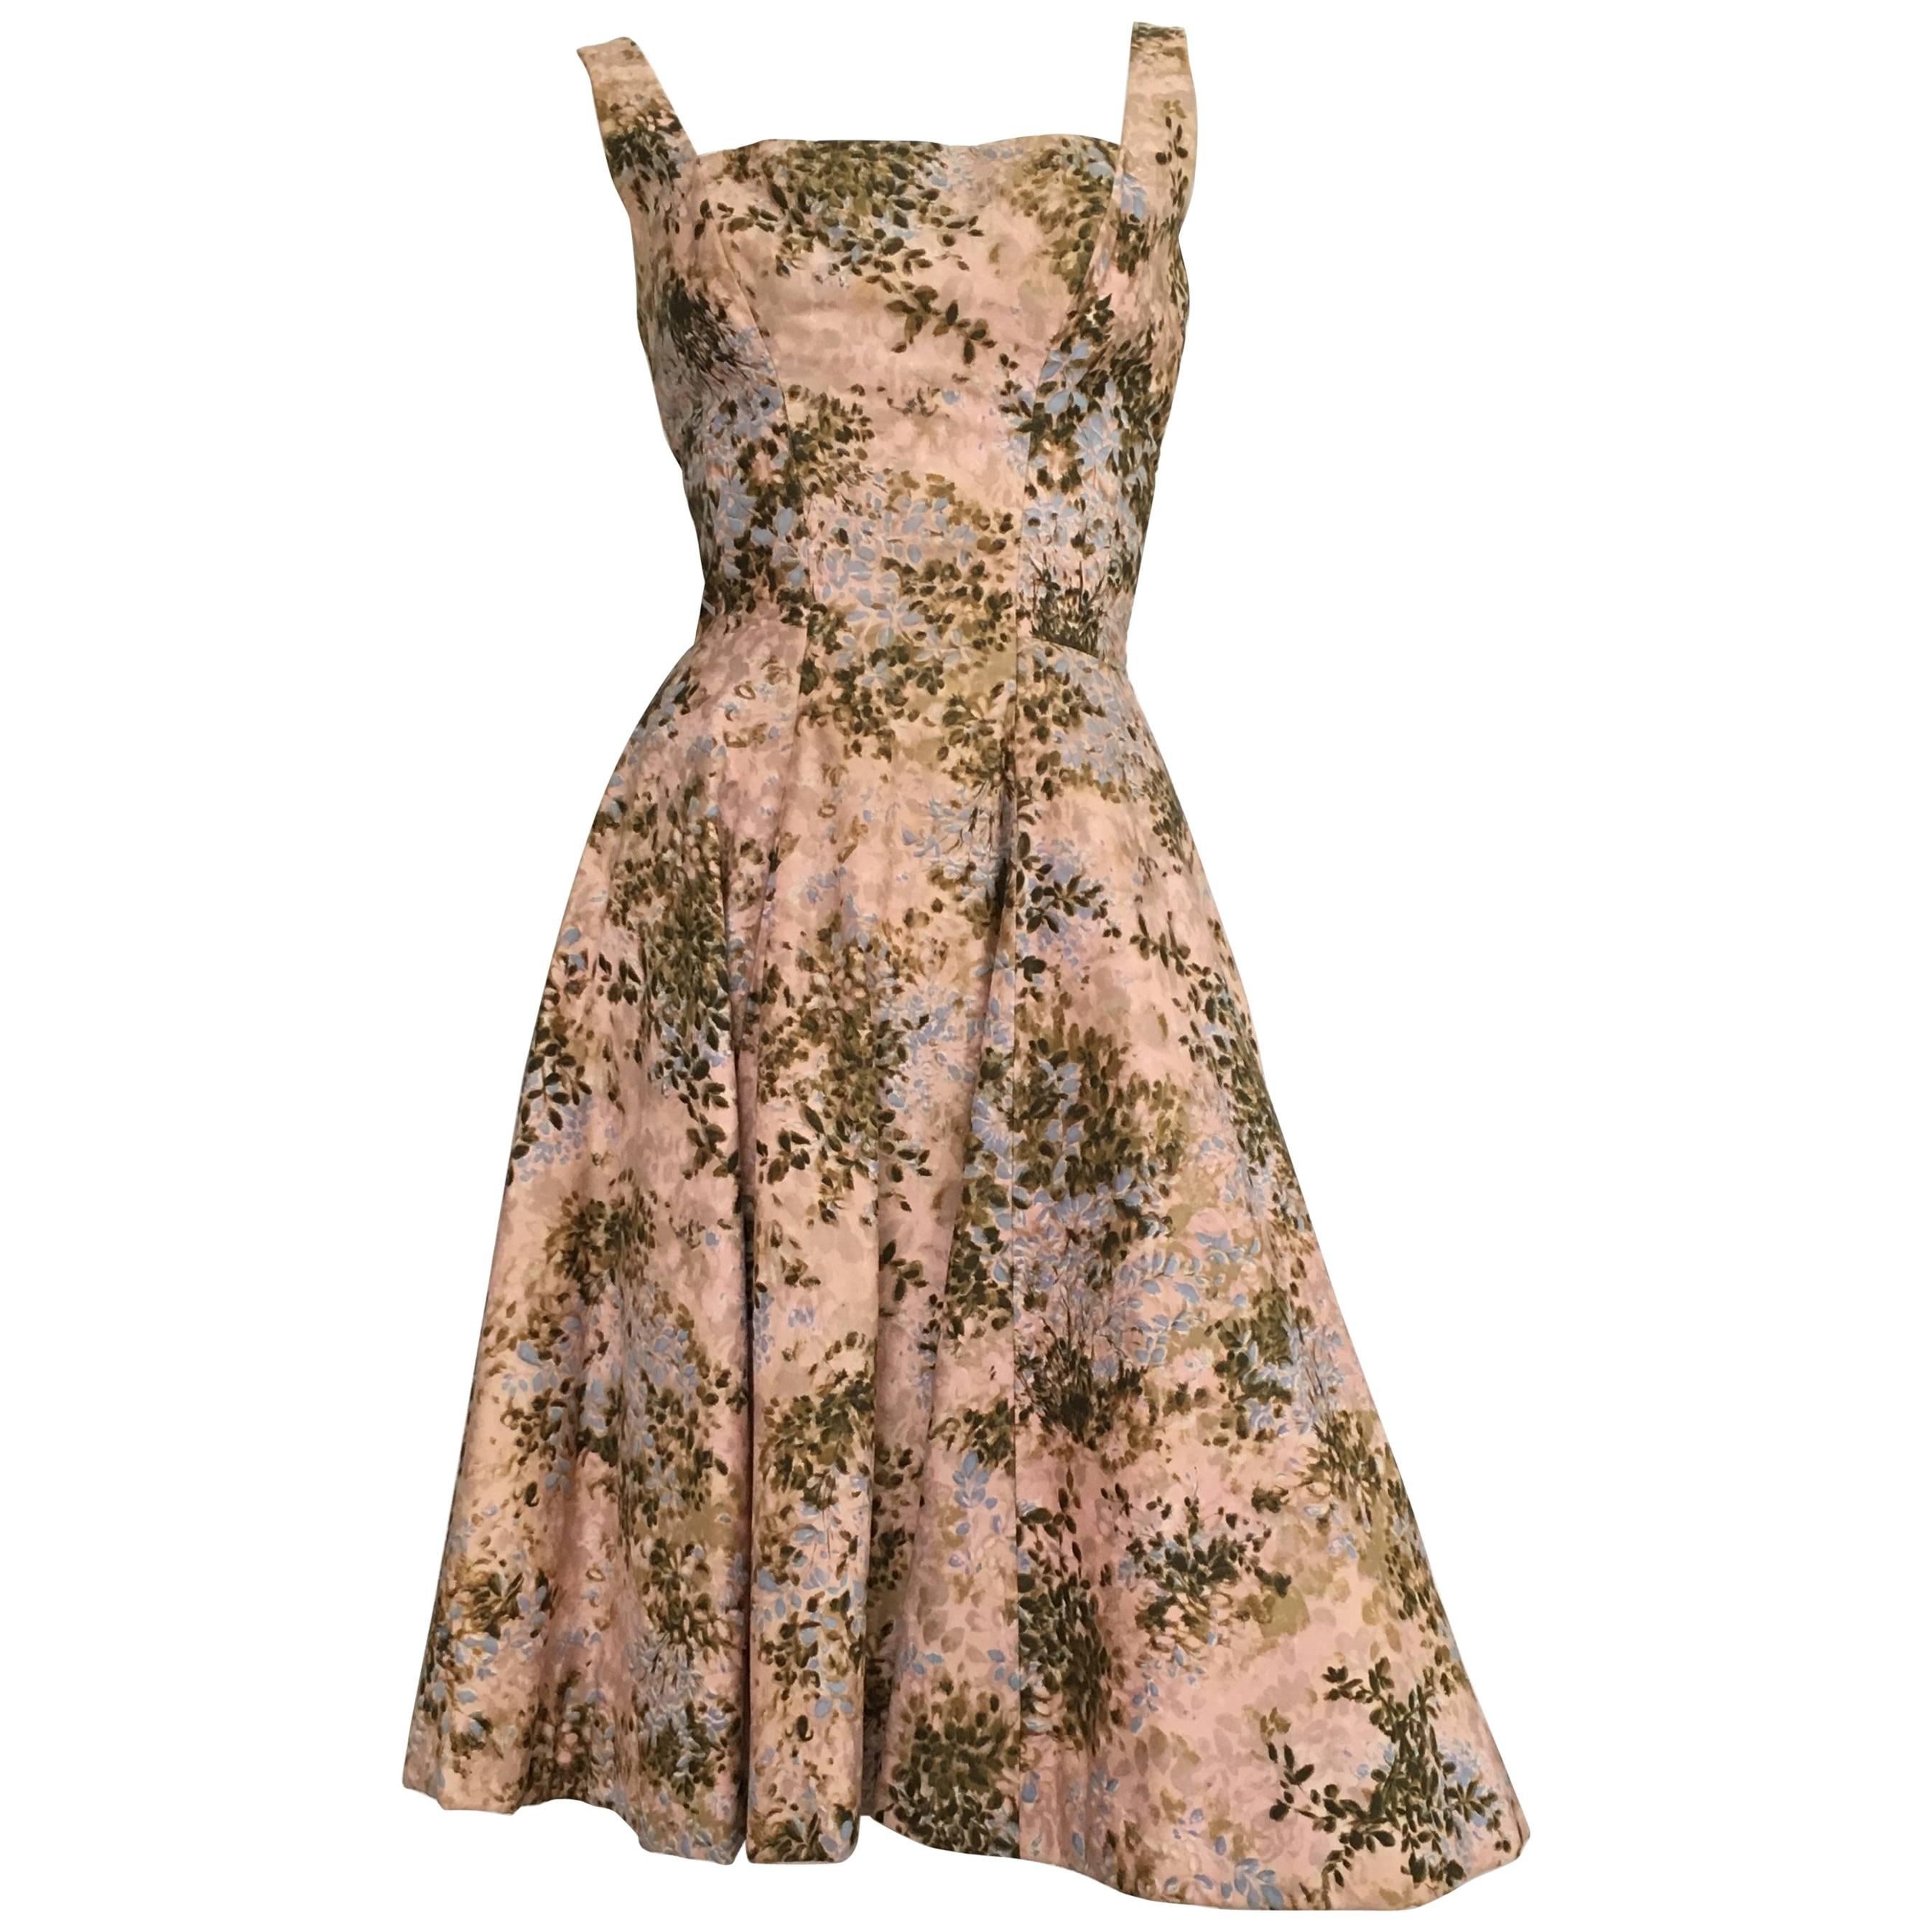 Estevez 1950s Cotton Floral Flared Dress Size 4. 